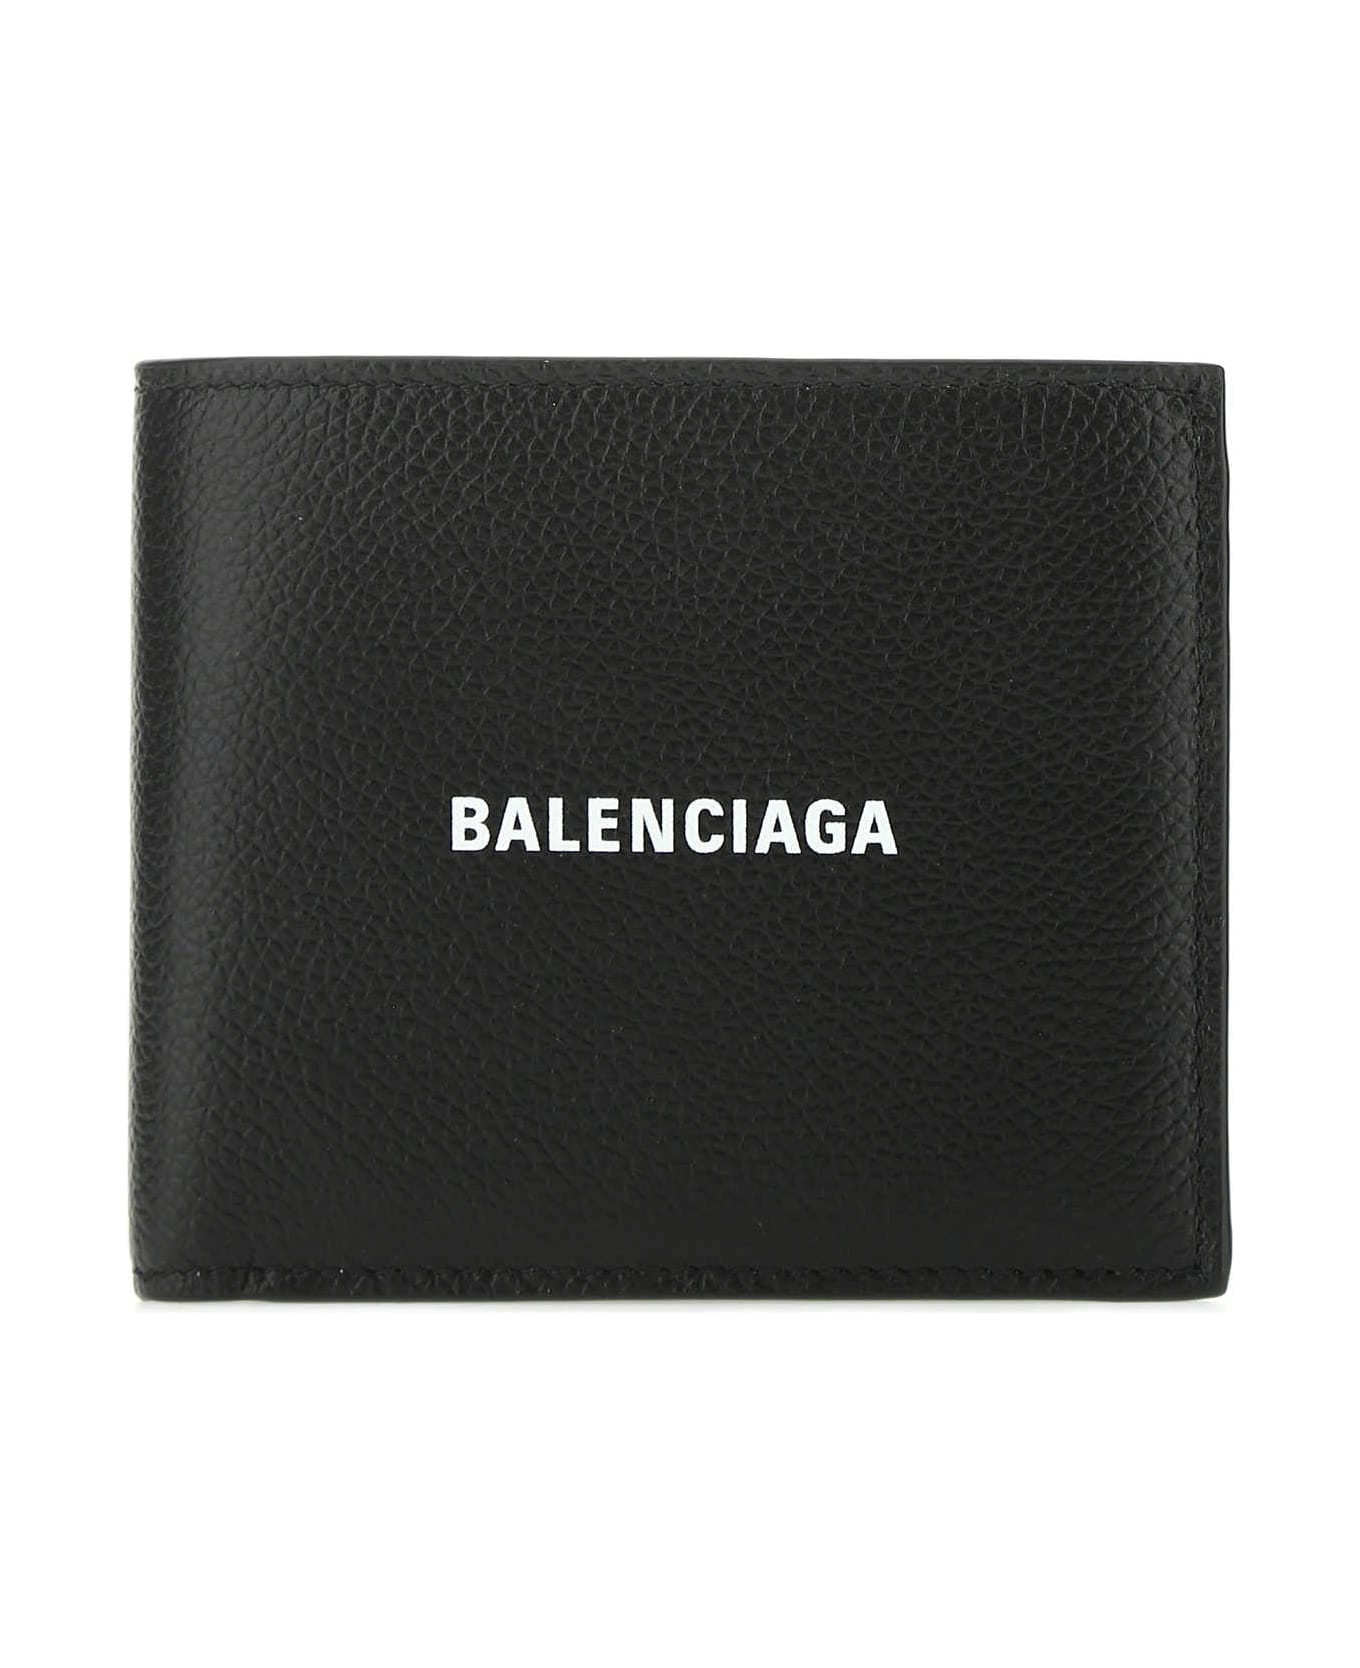 Balenciaga Black Leather Wallet - 1090